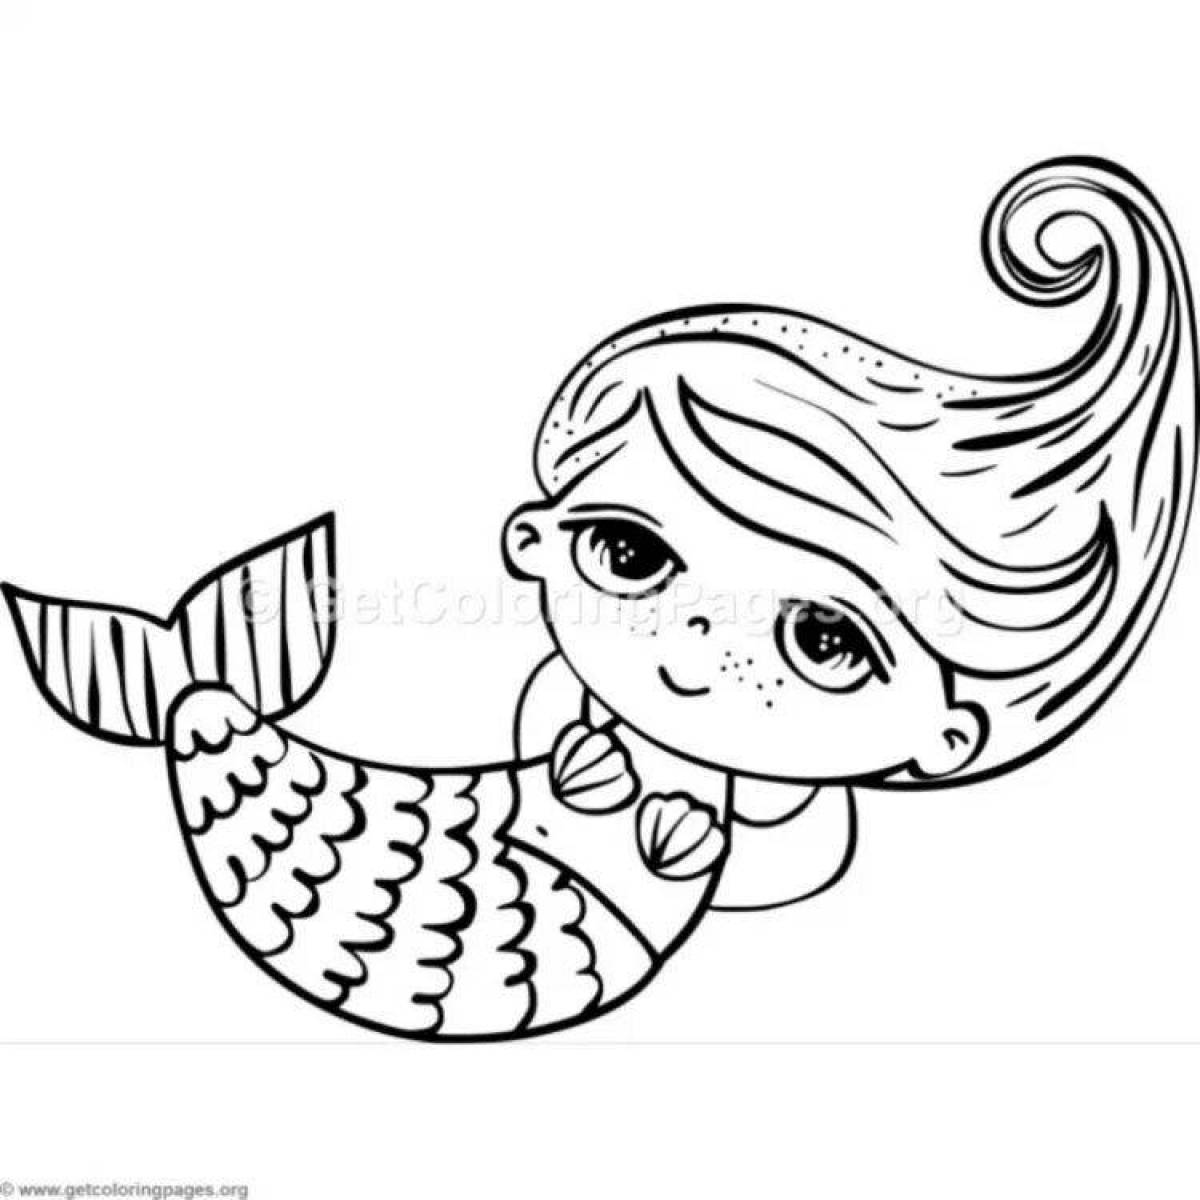 Radiant coloring page lol mermaid